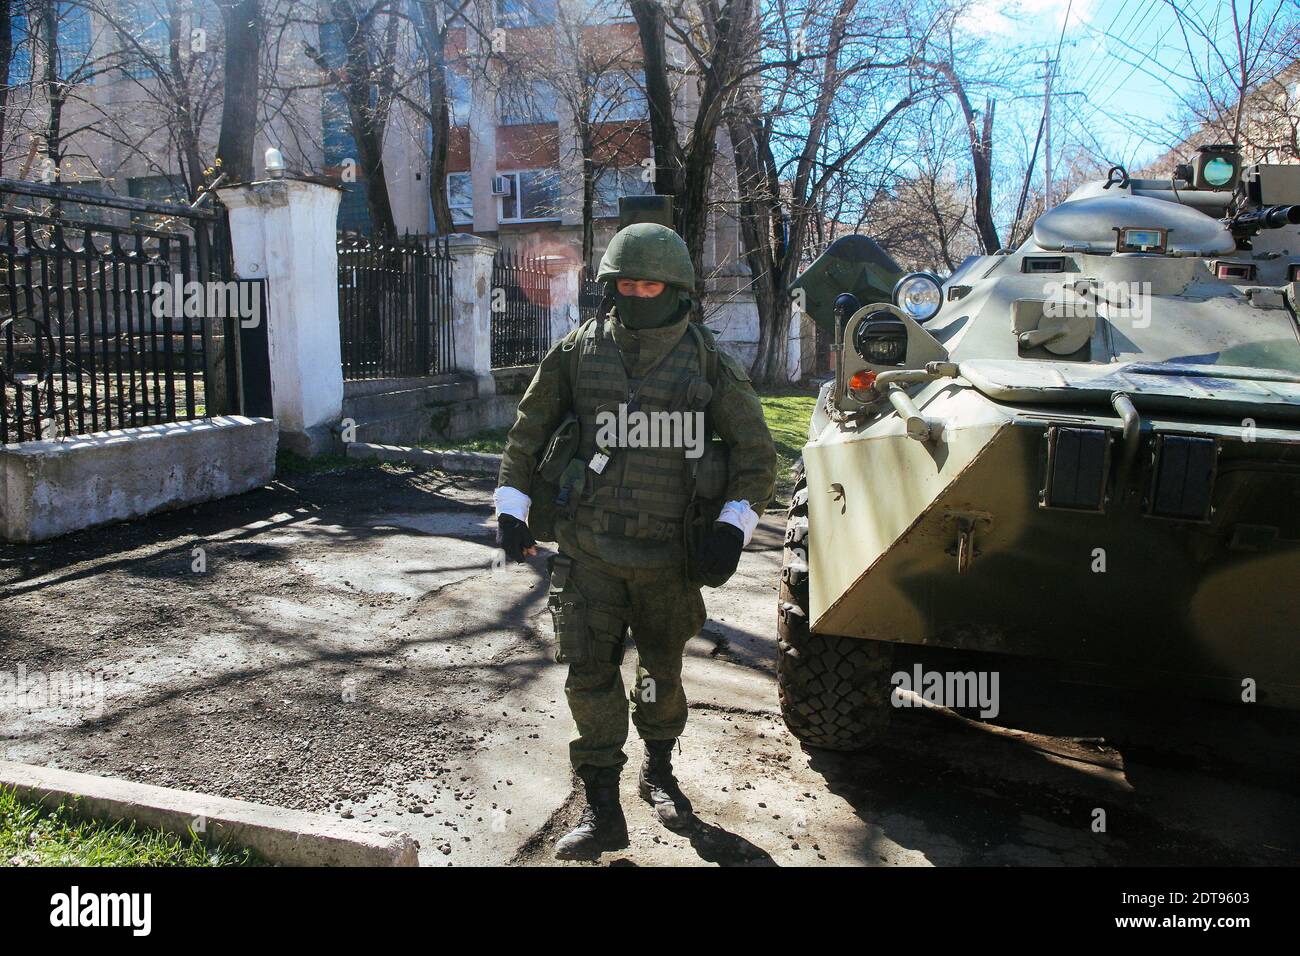 Bewaffnete Männer, die angeblich russische Soldaten sind, stehen vor einer ukrainischen Militärbasis in Simferopol auf der Krim Wache. Simferopol, Ukraine, am 17. März 2014. Fotos von Rafael Yaghobzadeh/ABACAPRESS.COM Stockfoto